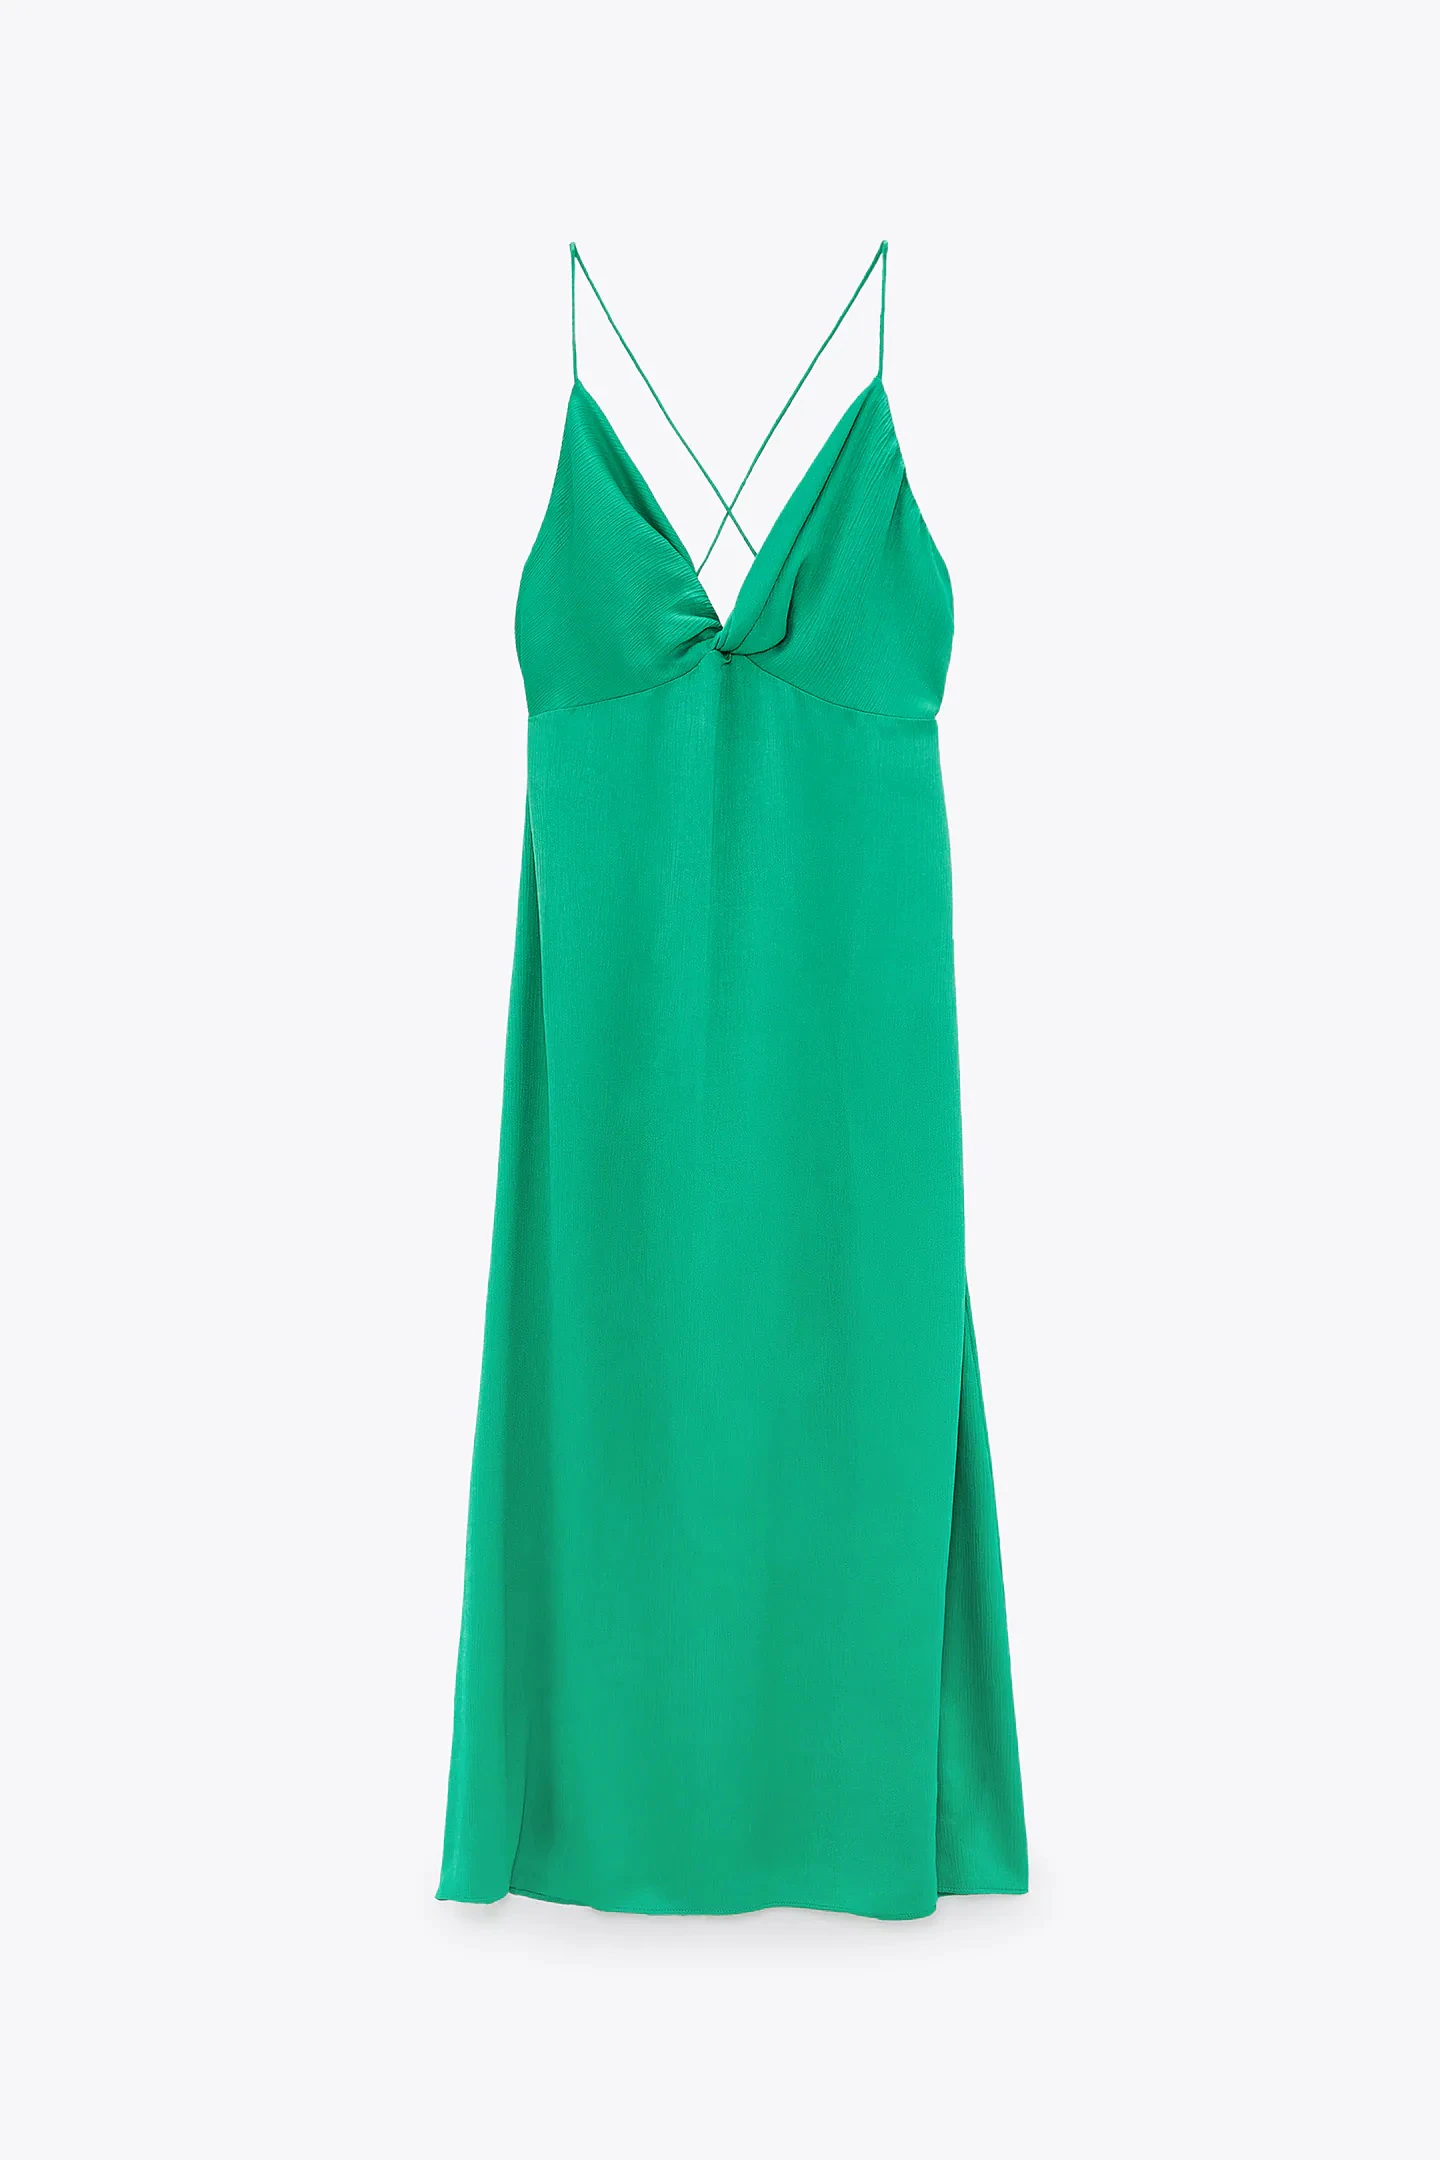 Útil Cariñoso Lujo Fotos: Verde que te quiero verde: 15 vestidos de Zara con el color  tendencia que rejuvenece y que adelanta el verano | Mujer Hoy